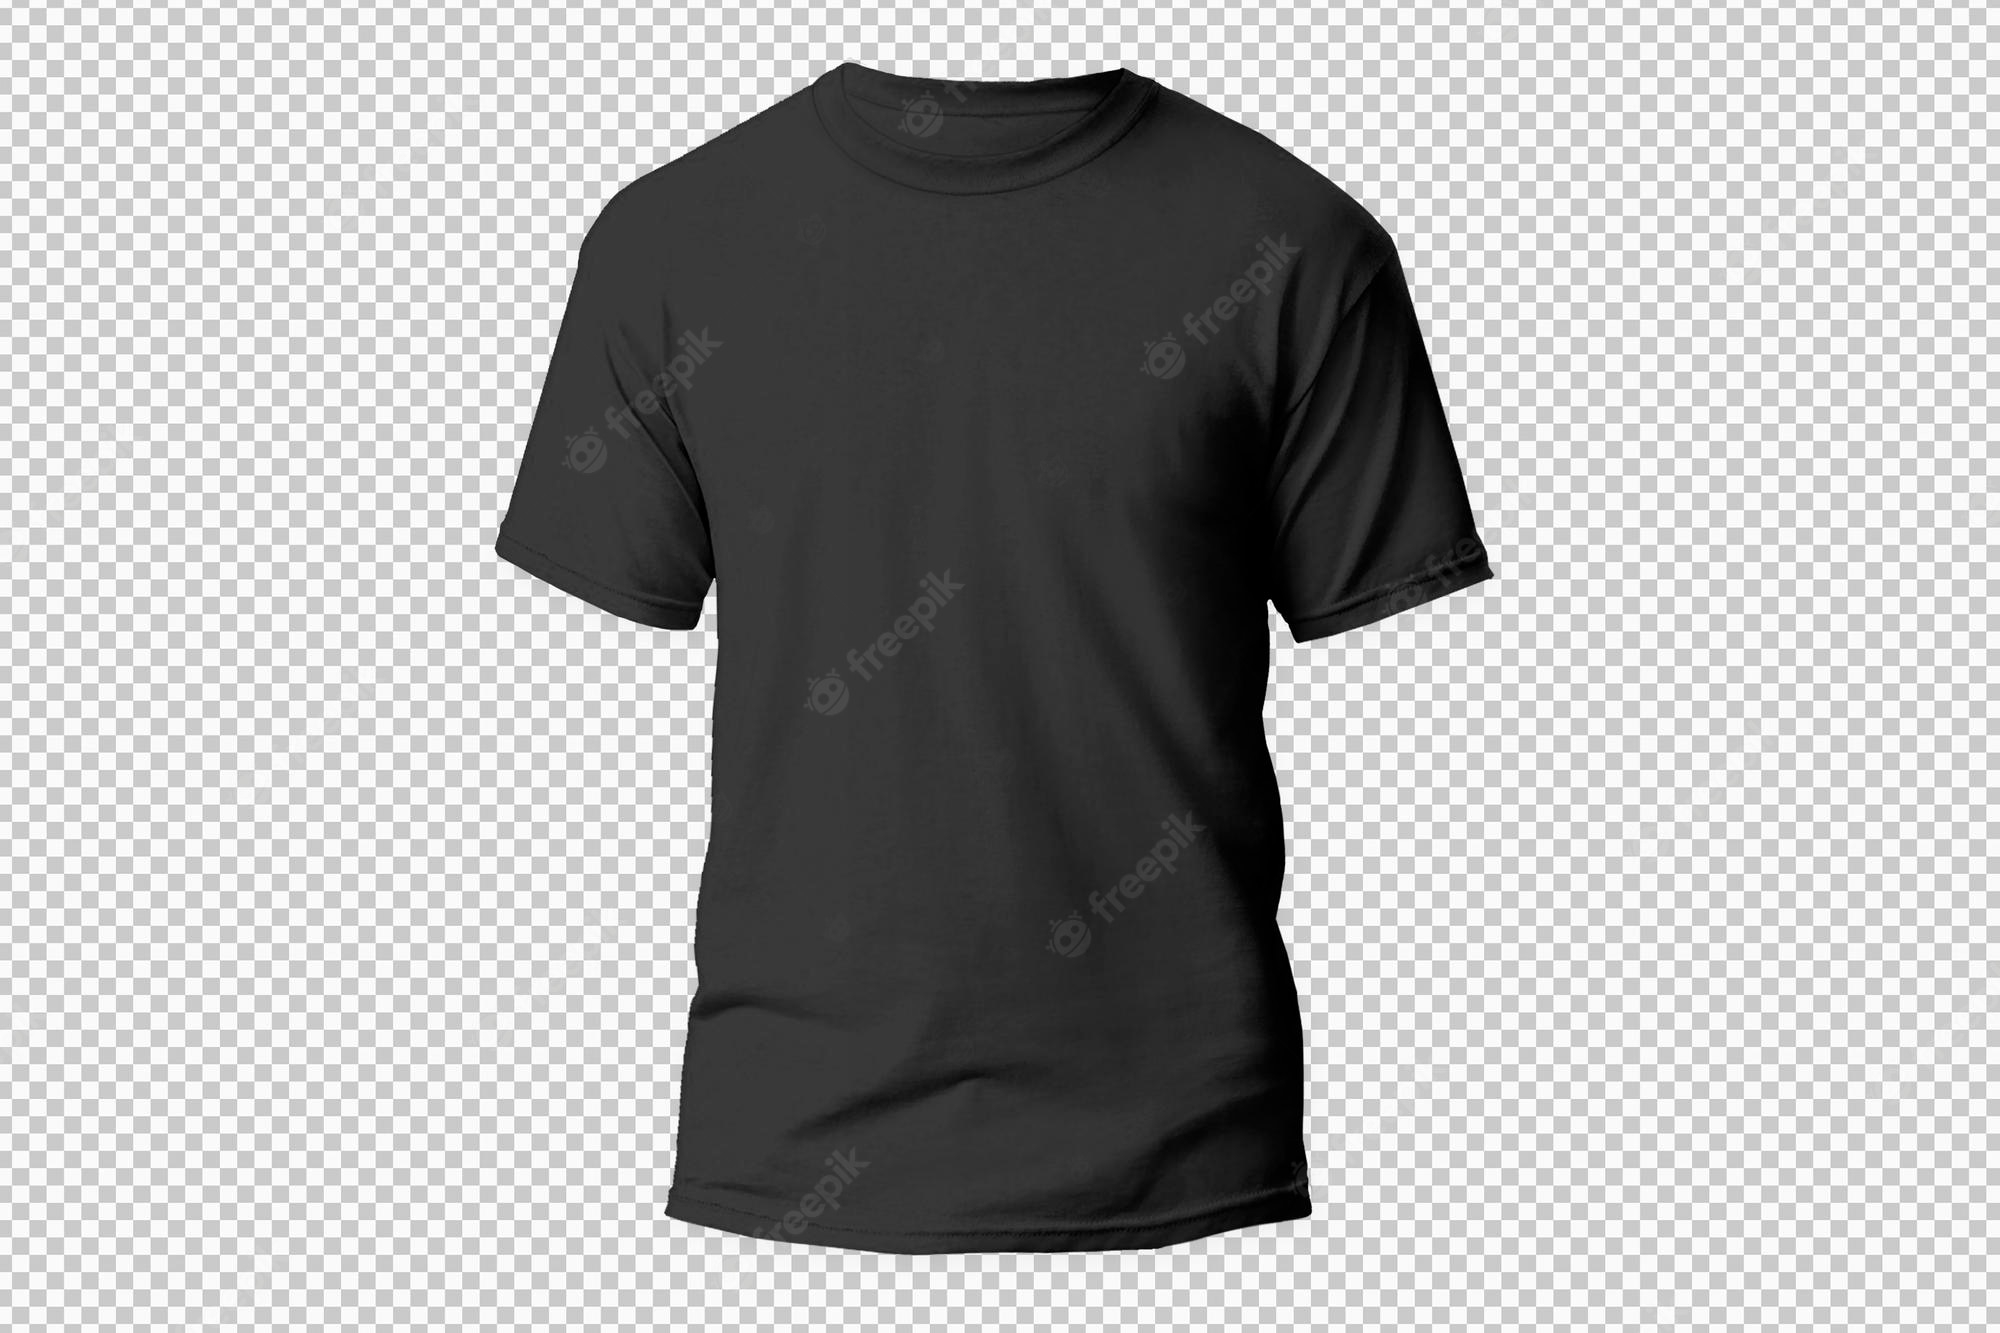 Bilder – Tshirt  Gratis Vektoren, Fotos Und PSDs With Blank T Shirt Design Template Psd